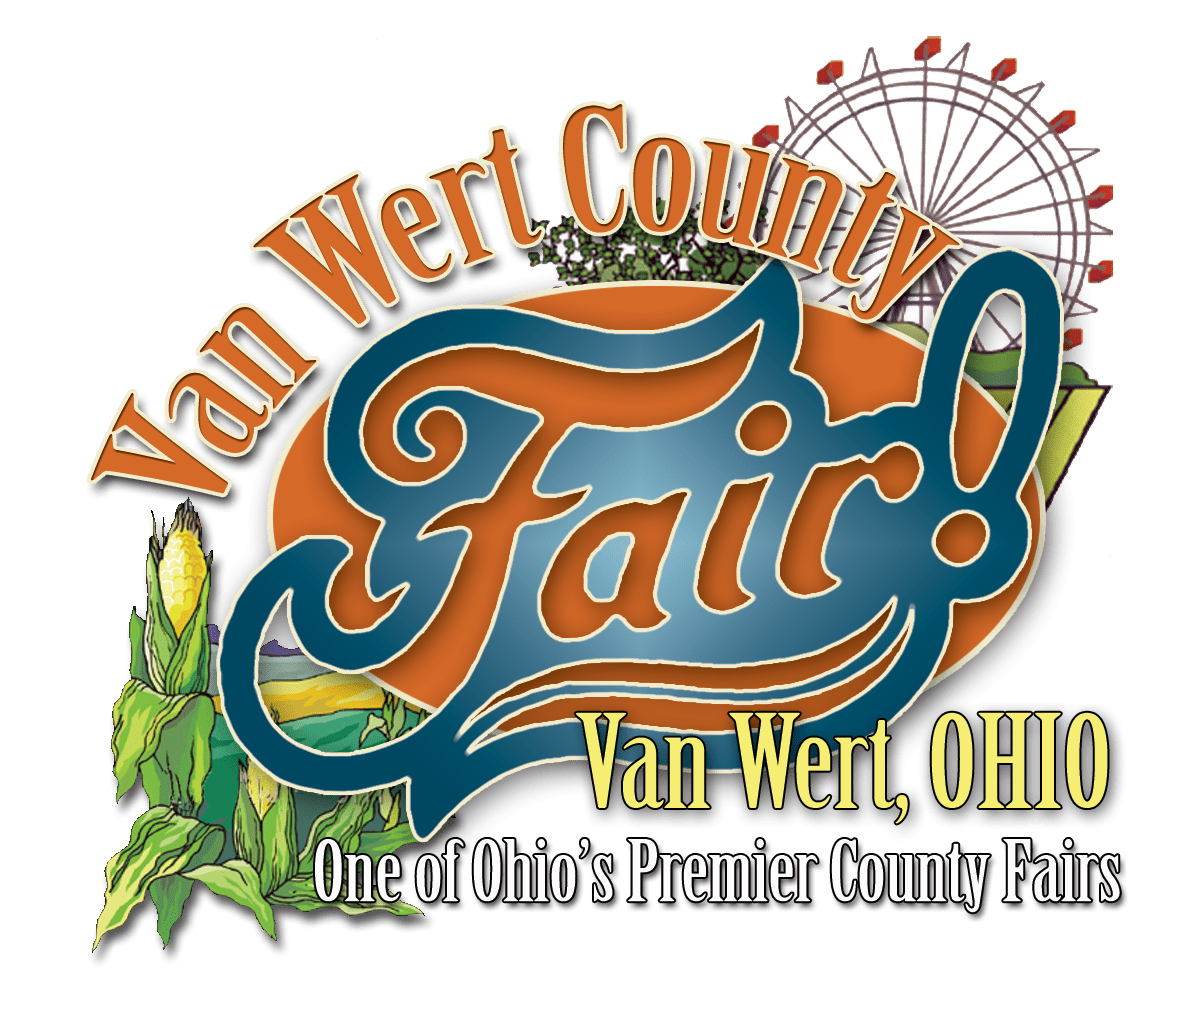 Van Wert County Fair Visit Van Wert